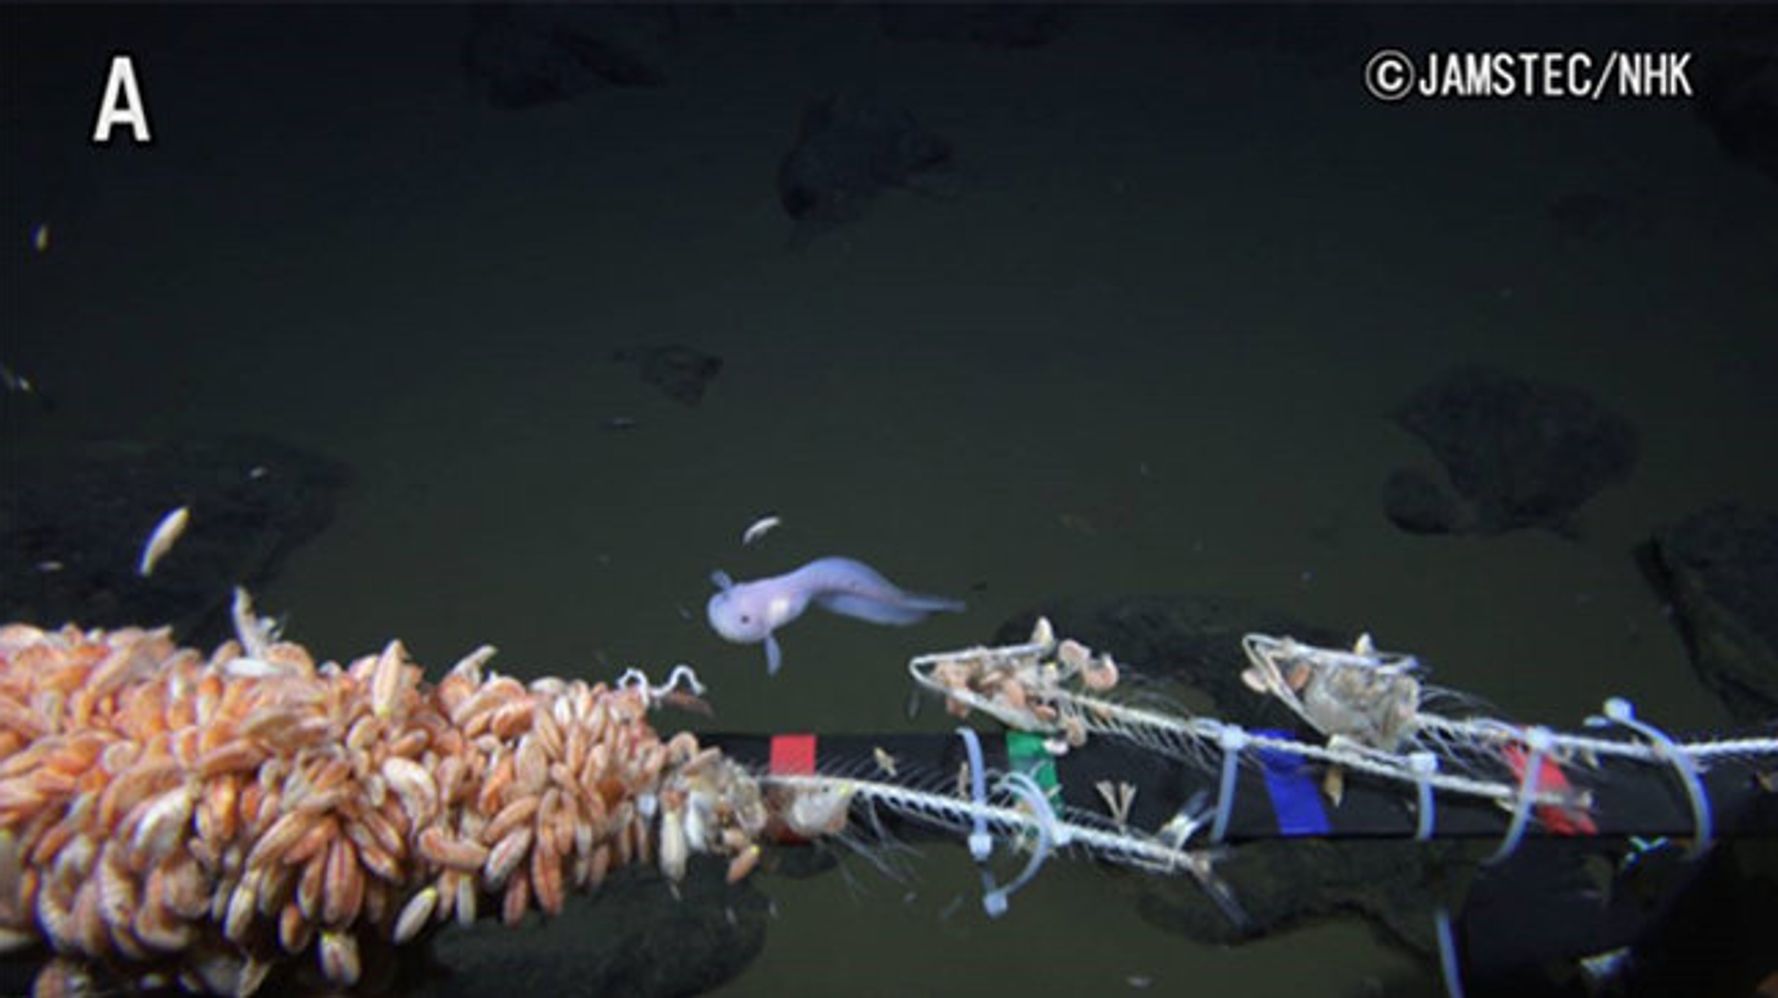 これが世界で最も深い場所で撮影された深海魚だ 動画 ハフポスト